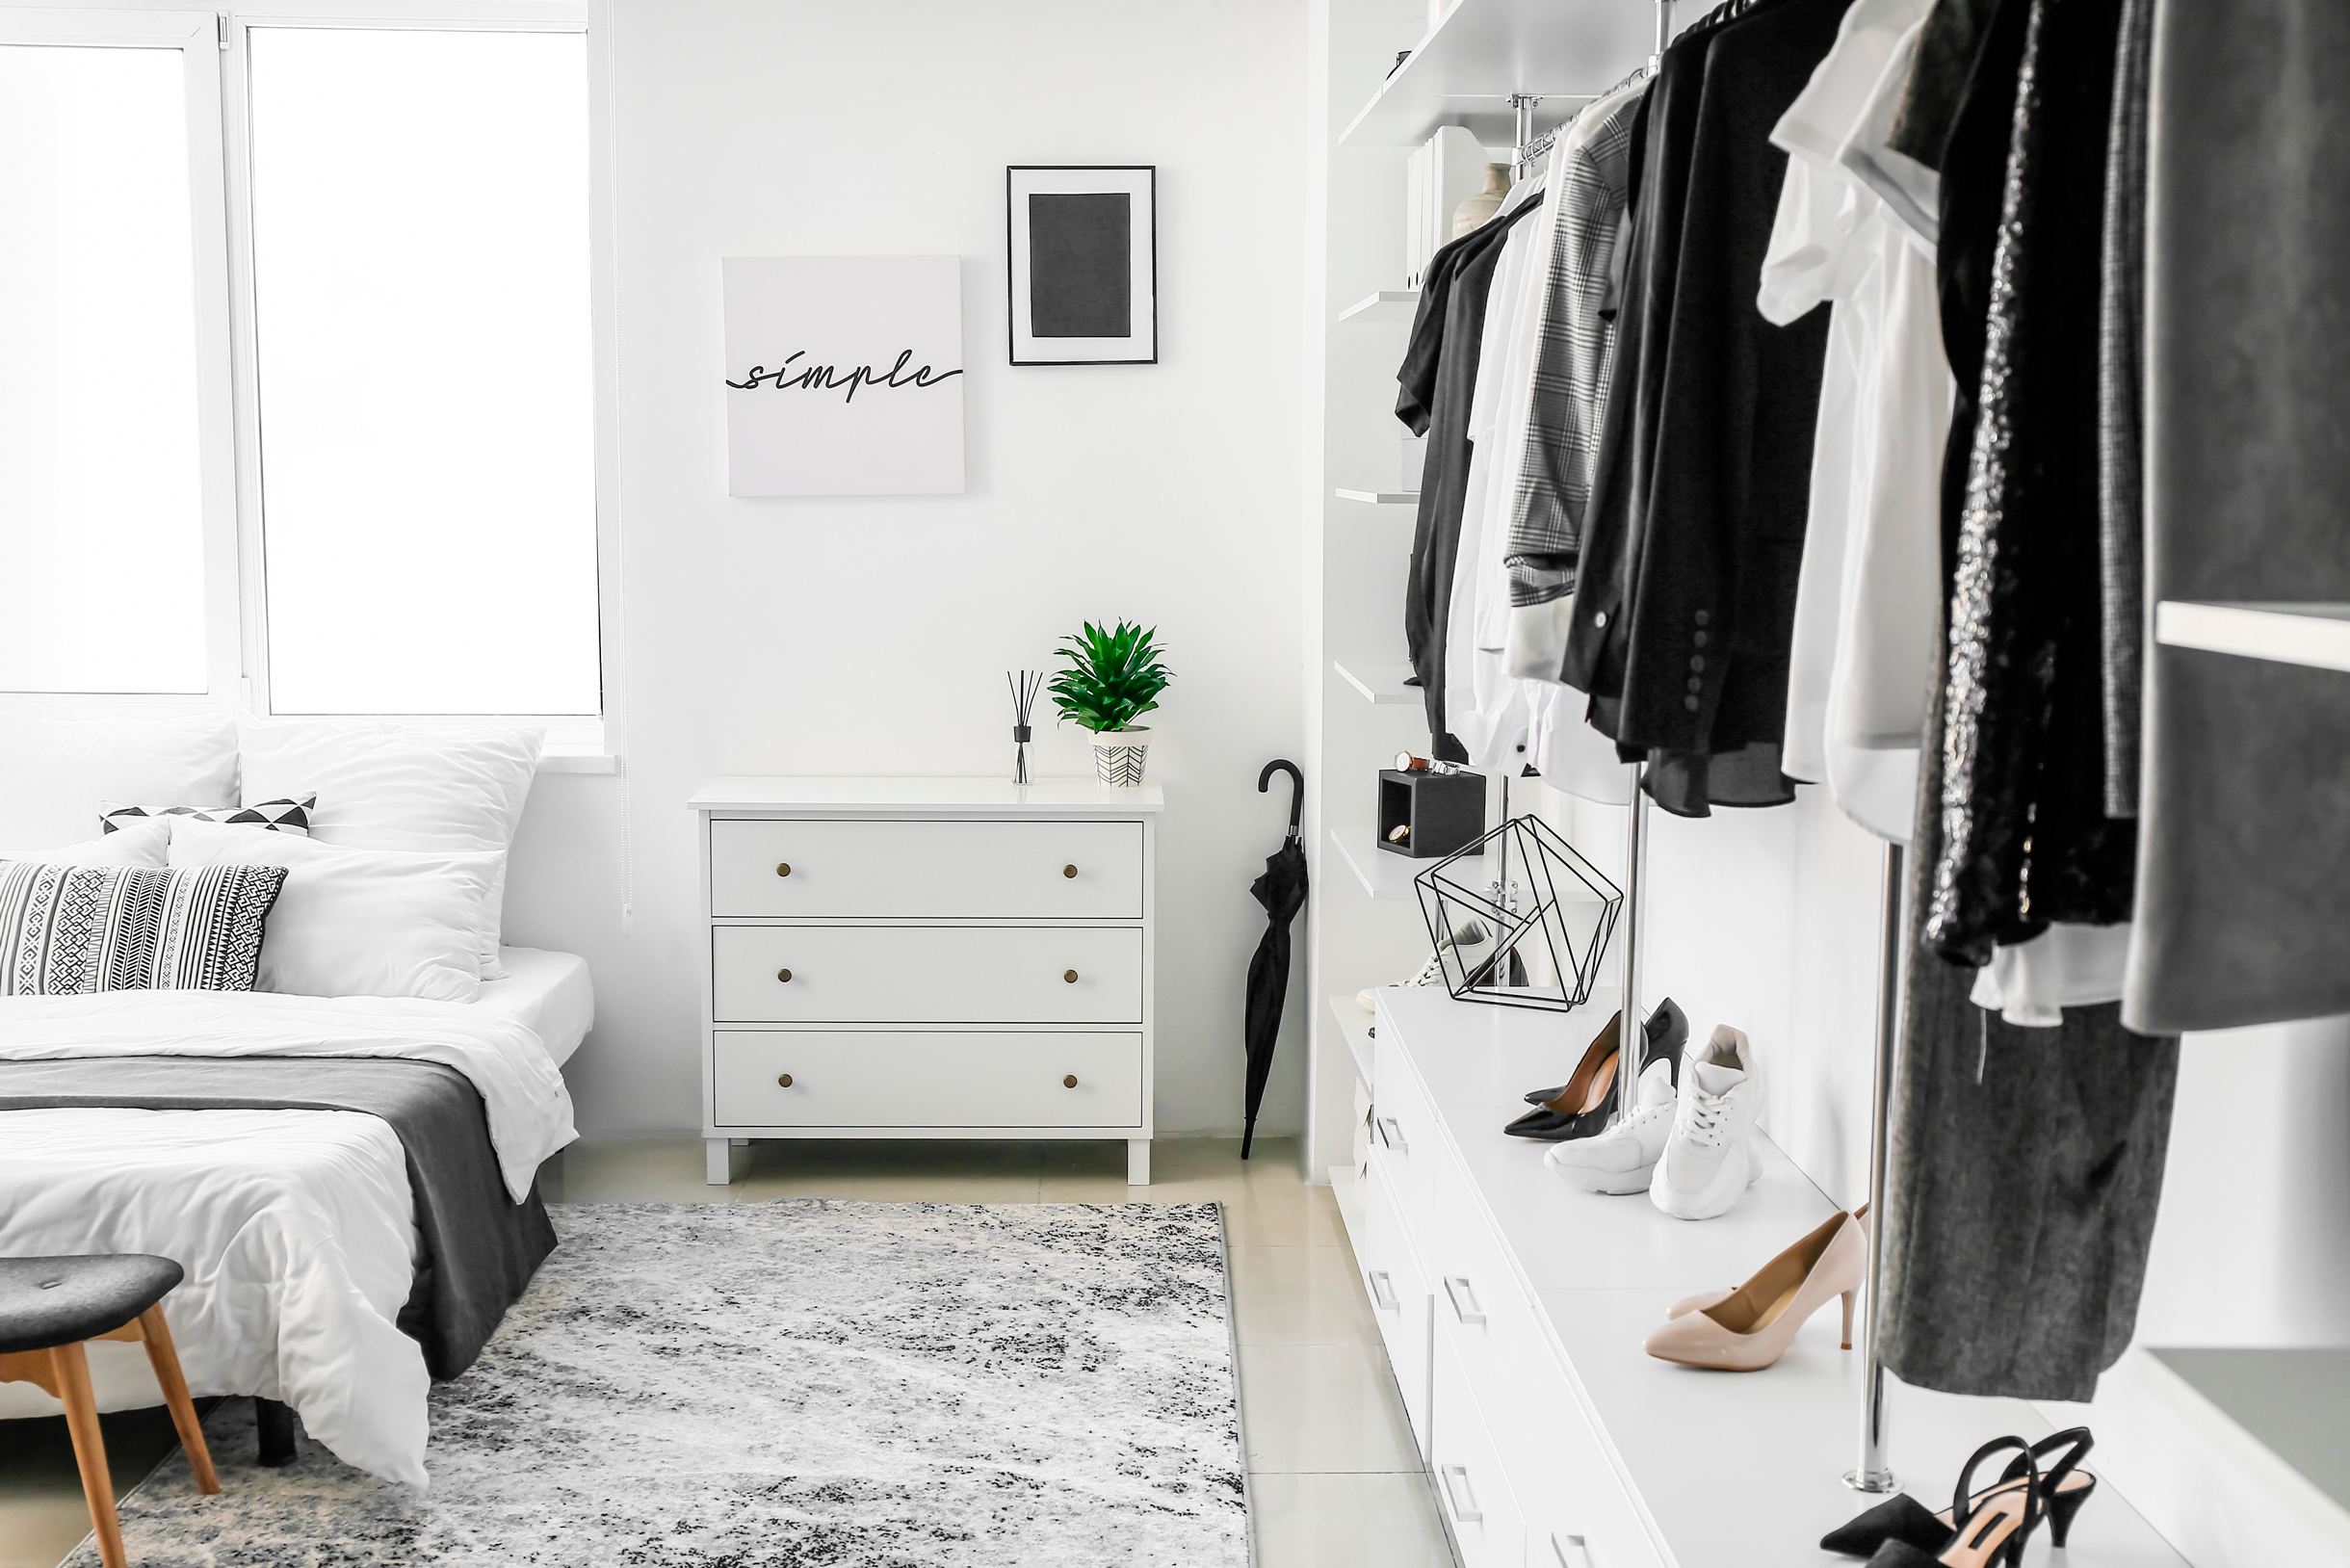 Вместо открытого гардероба мог быть просто белый закрытый шкаф. Фотография: Pixel⁠-⁠Shot / Shutterstock / FOTODOM